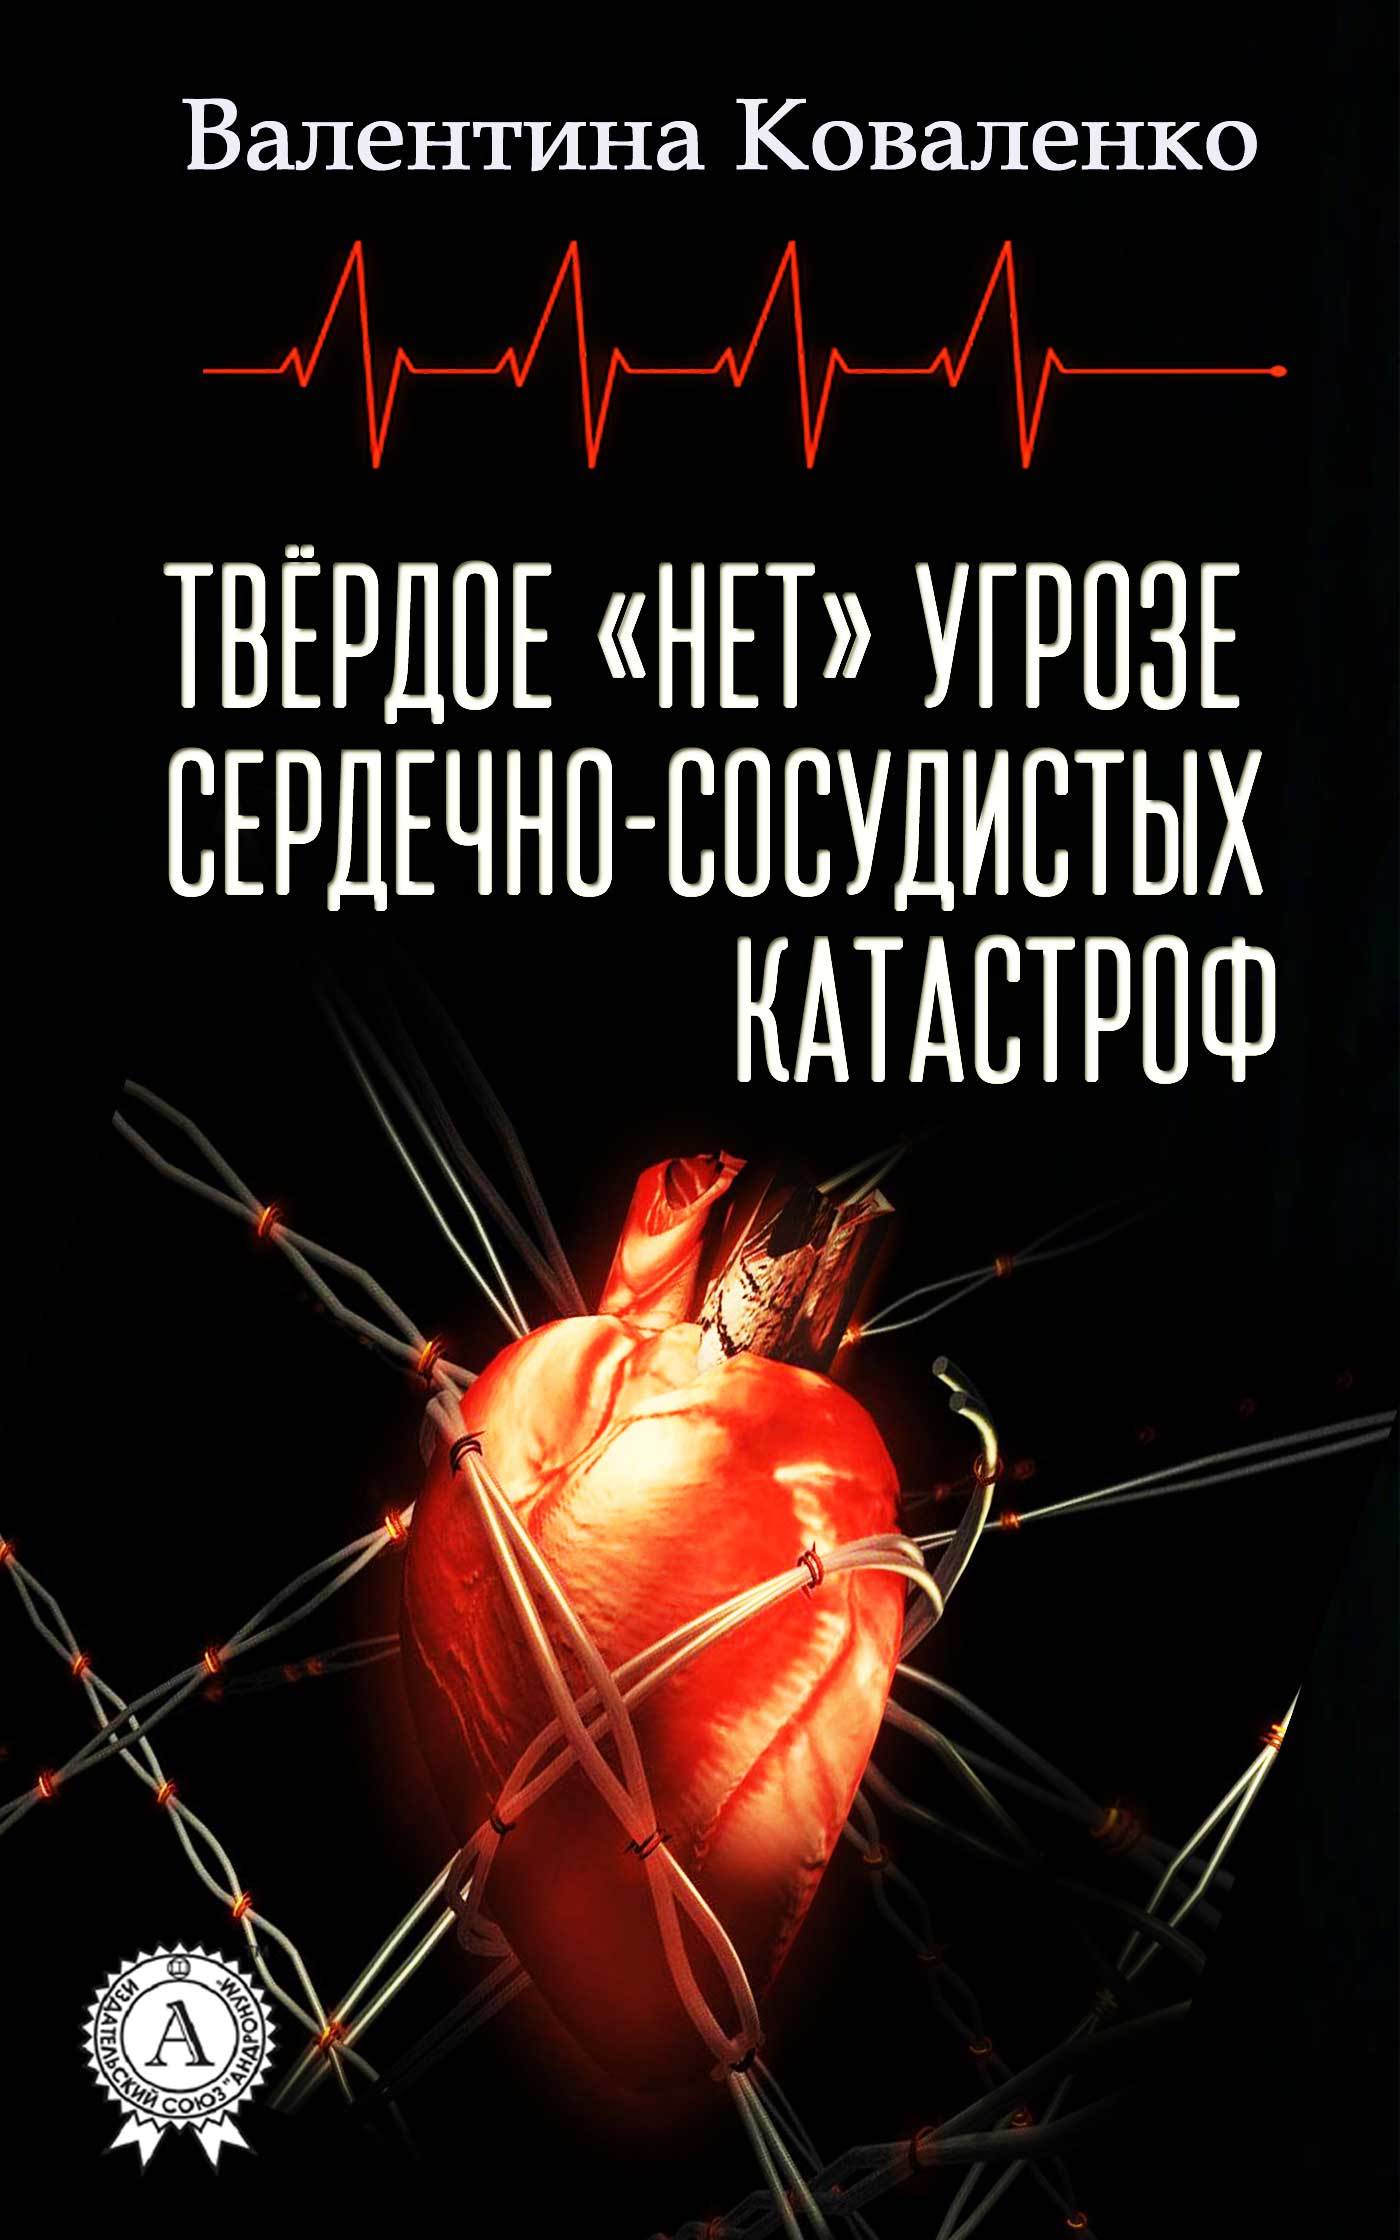 Книга Твёрдое «нет» угрозе сердечно-сосудистых катастроф из серии , созданная Валентина Коваленко, может относится к жанру Медицина, Здоровье. Стоимость книги Твёрдое «нет» угрозе сердечно-сосудистых катастроф  с идентификатором 25919566 составляет 149.00 руб.